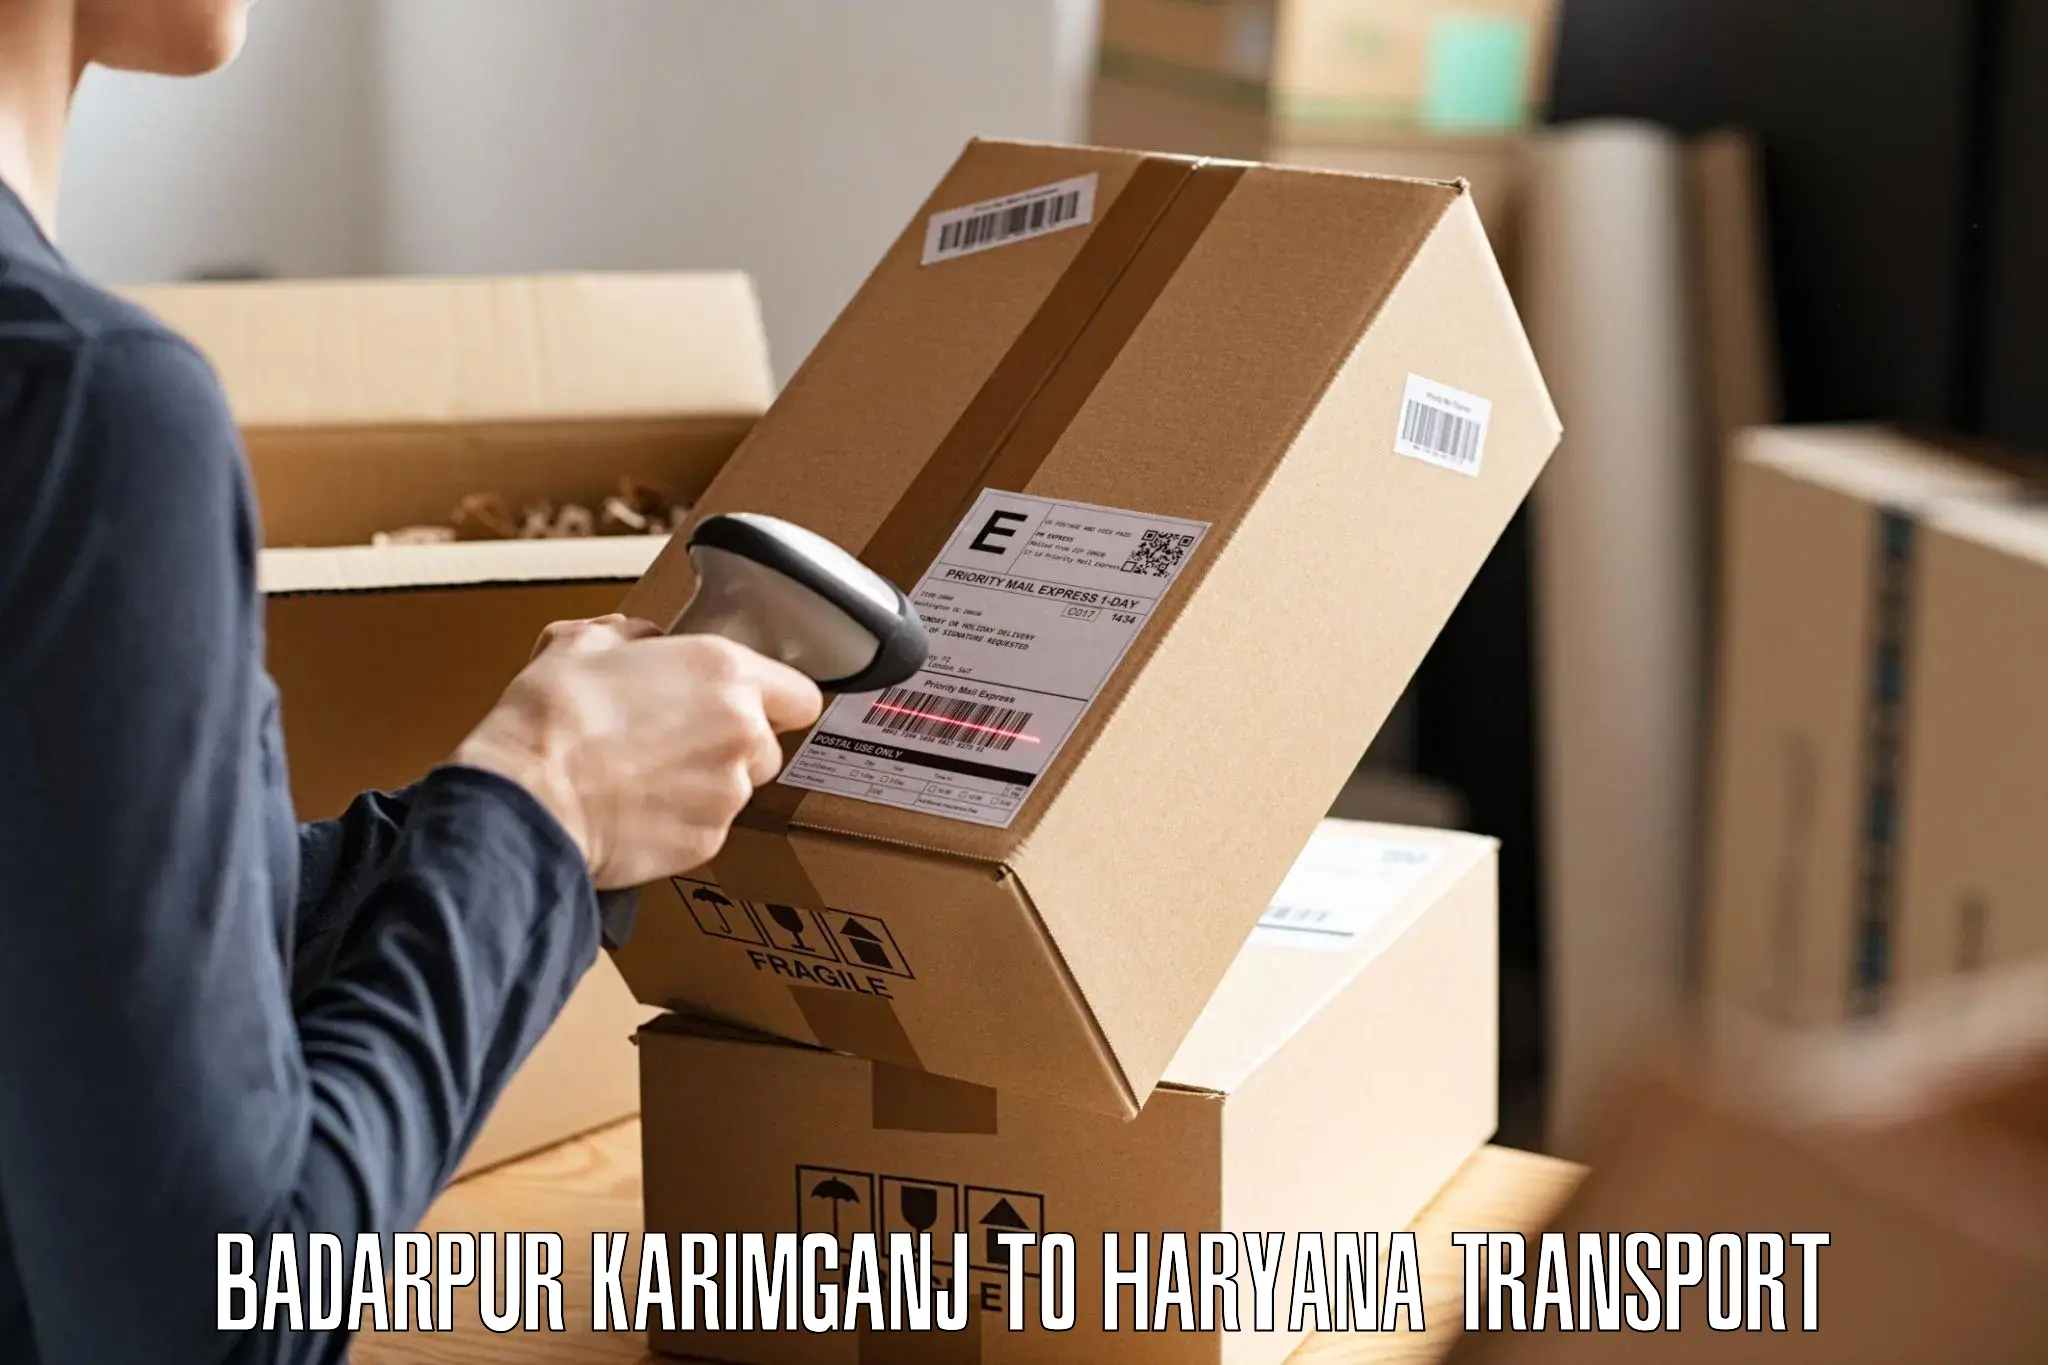 Goods delivery service Badarpur Karimganj to Ellenabad